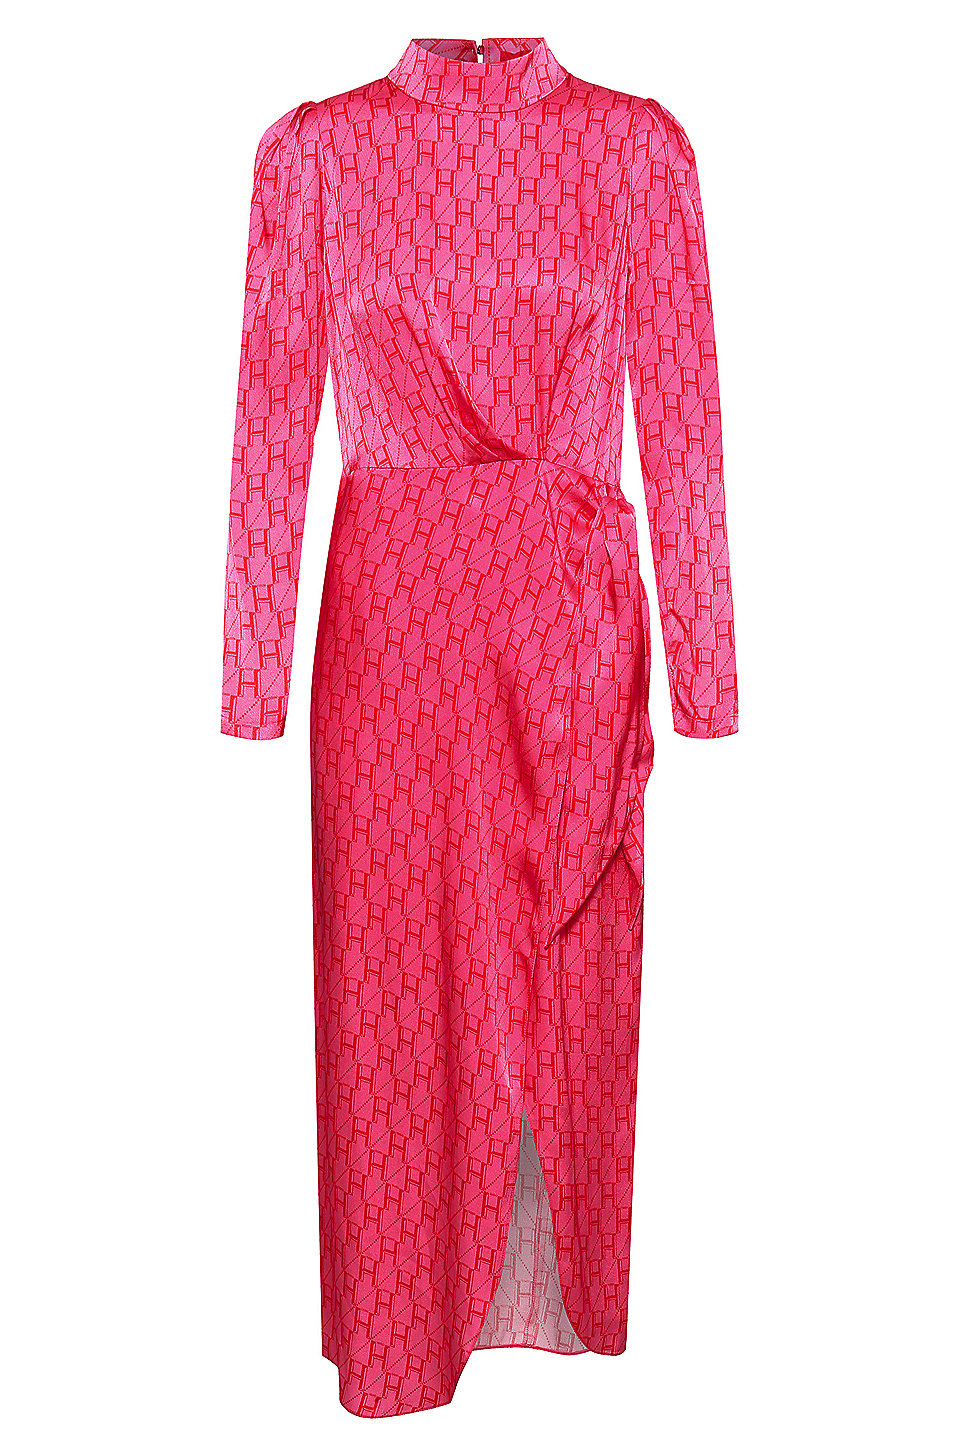 Hugo Boss Pink Dress | lupon.gov.ph